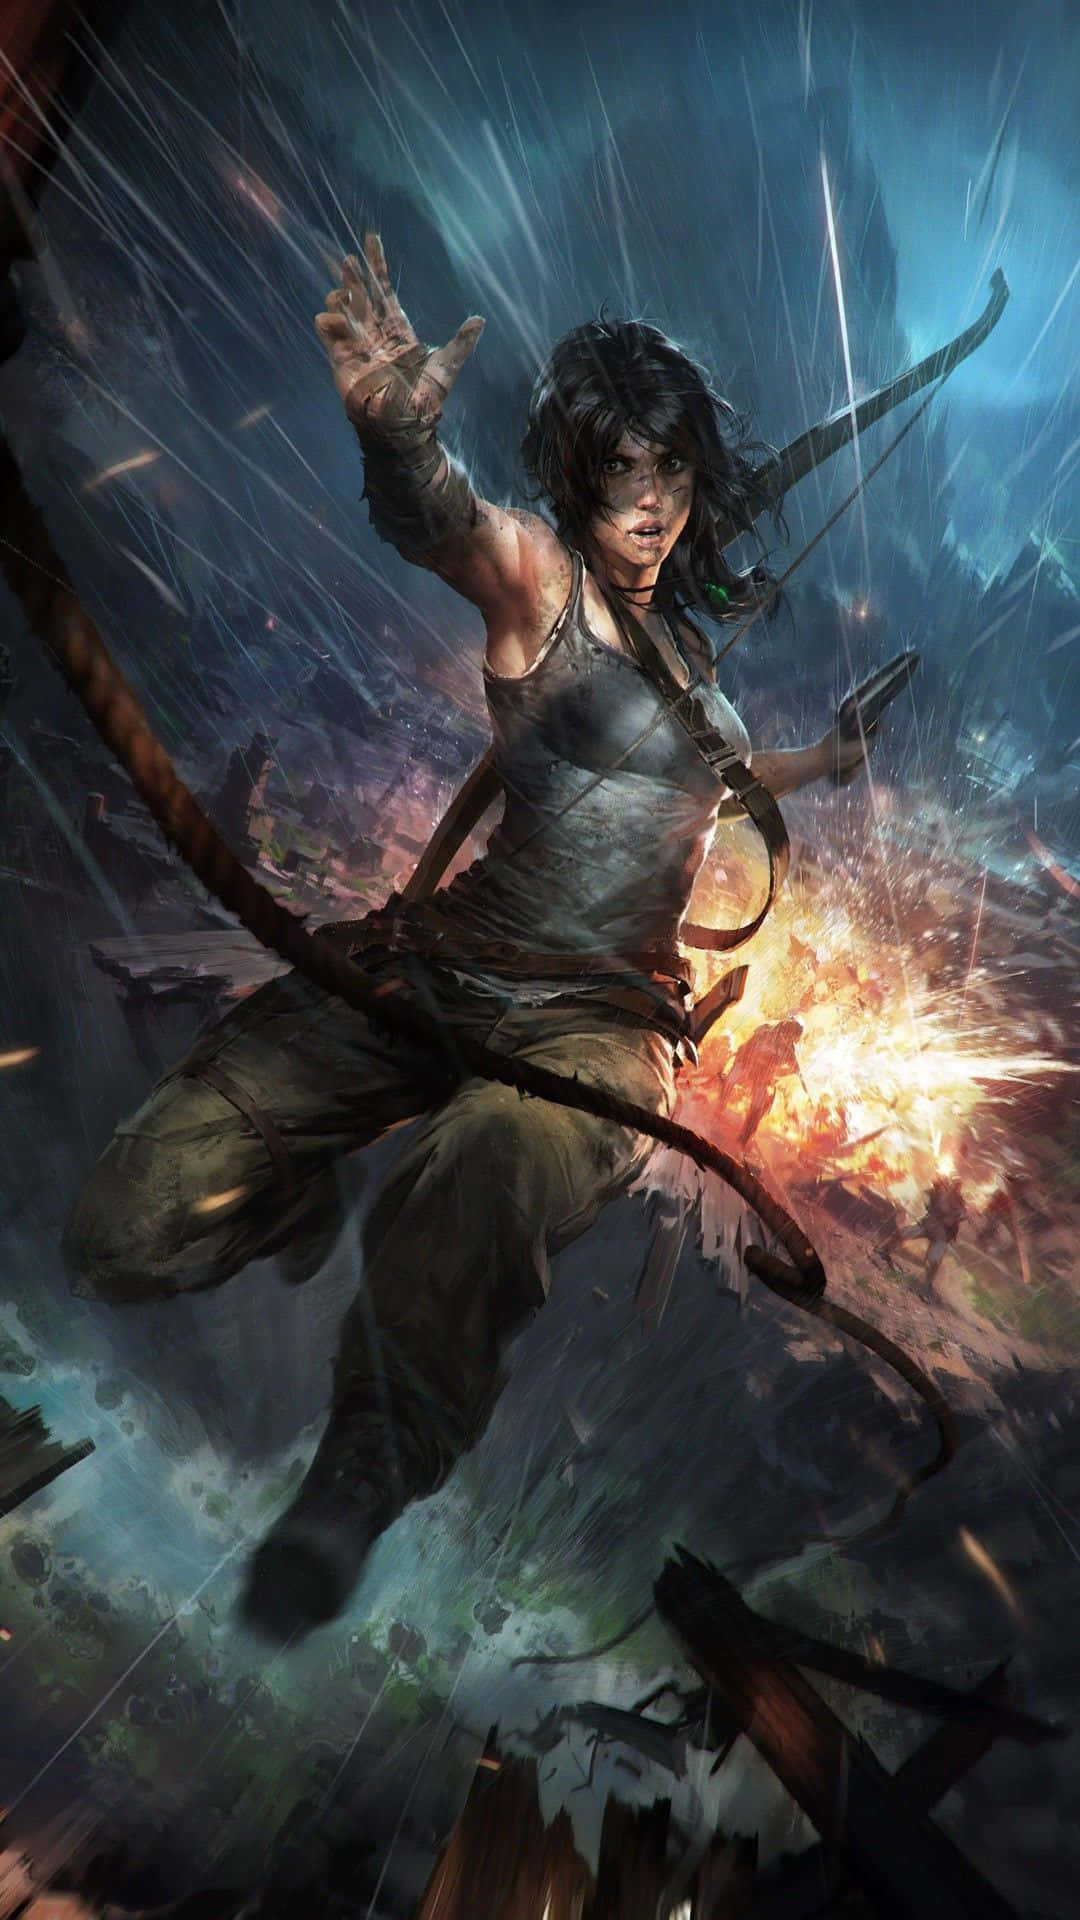 Besuchensie Lara Crofts Welt Auf Ihrem Tomb Raider Handy Wieder Wallpaper